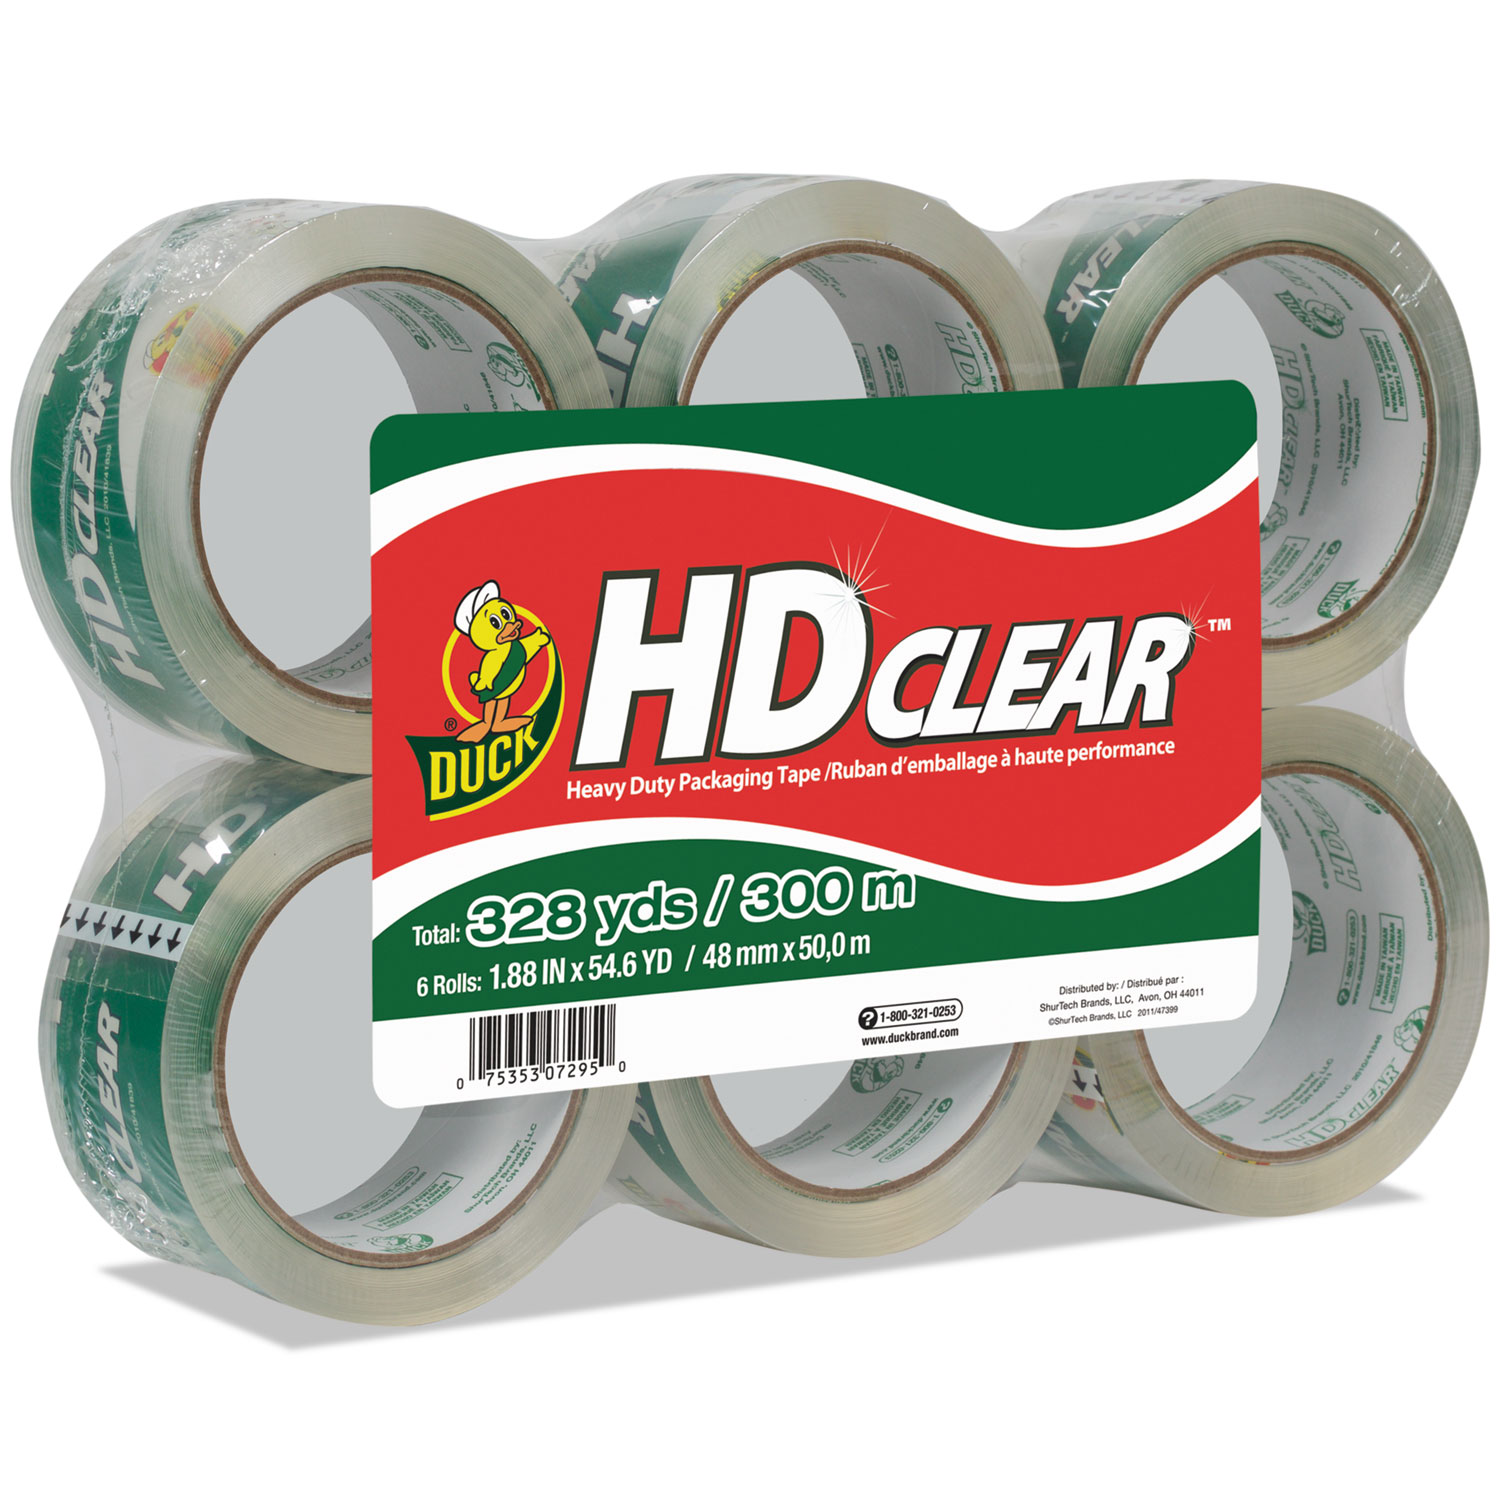 Heavy-Duty Carton Packaging Tape, 1.88 x 55yds, Clear, 6 Rolls